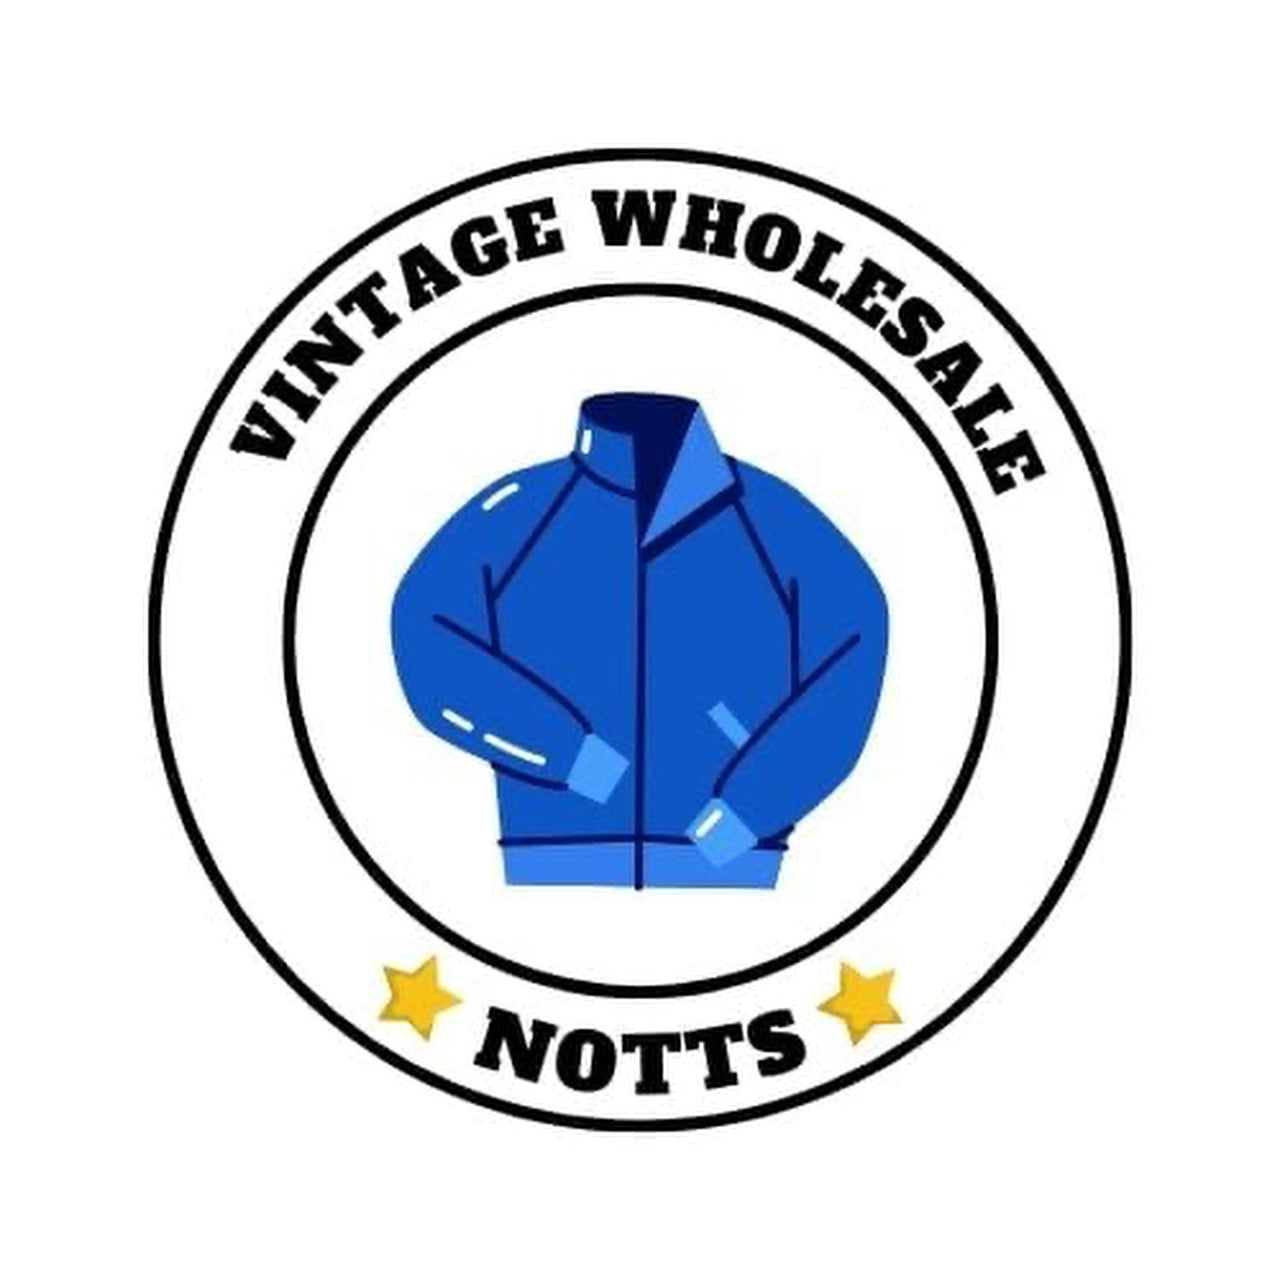 Vintage wholesaler Notts